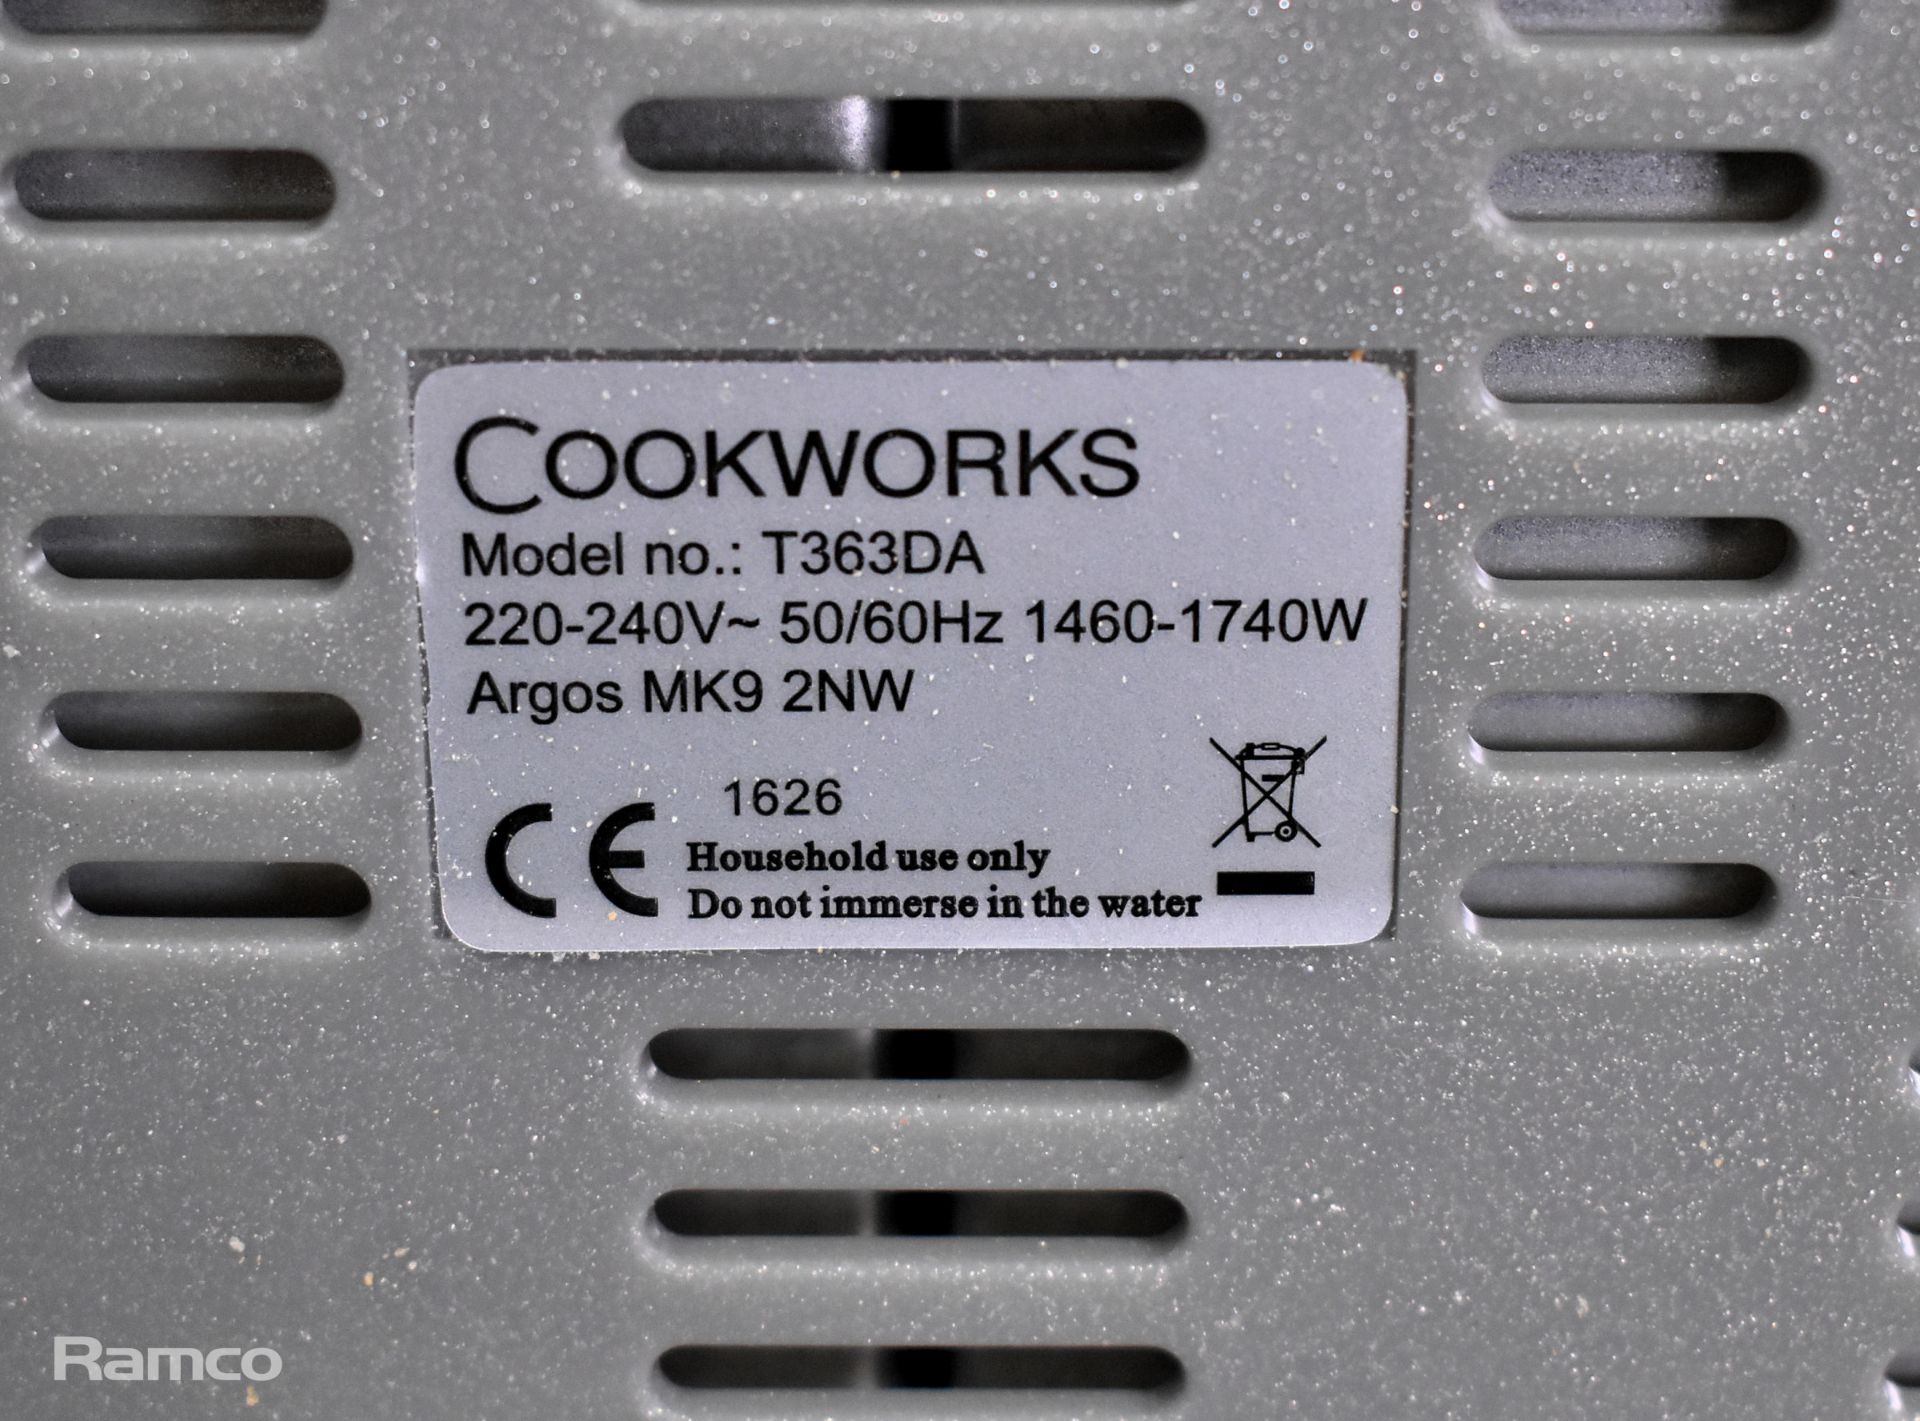 Cookworks T363DA 4-slice toaster - Image 3 of 4